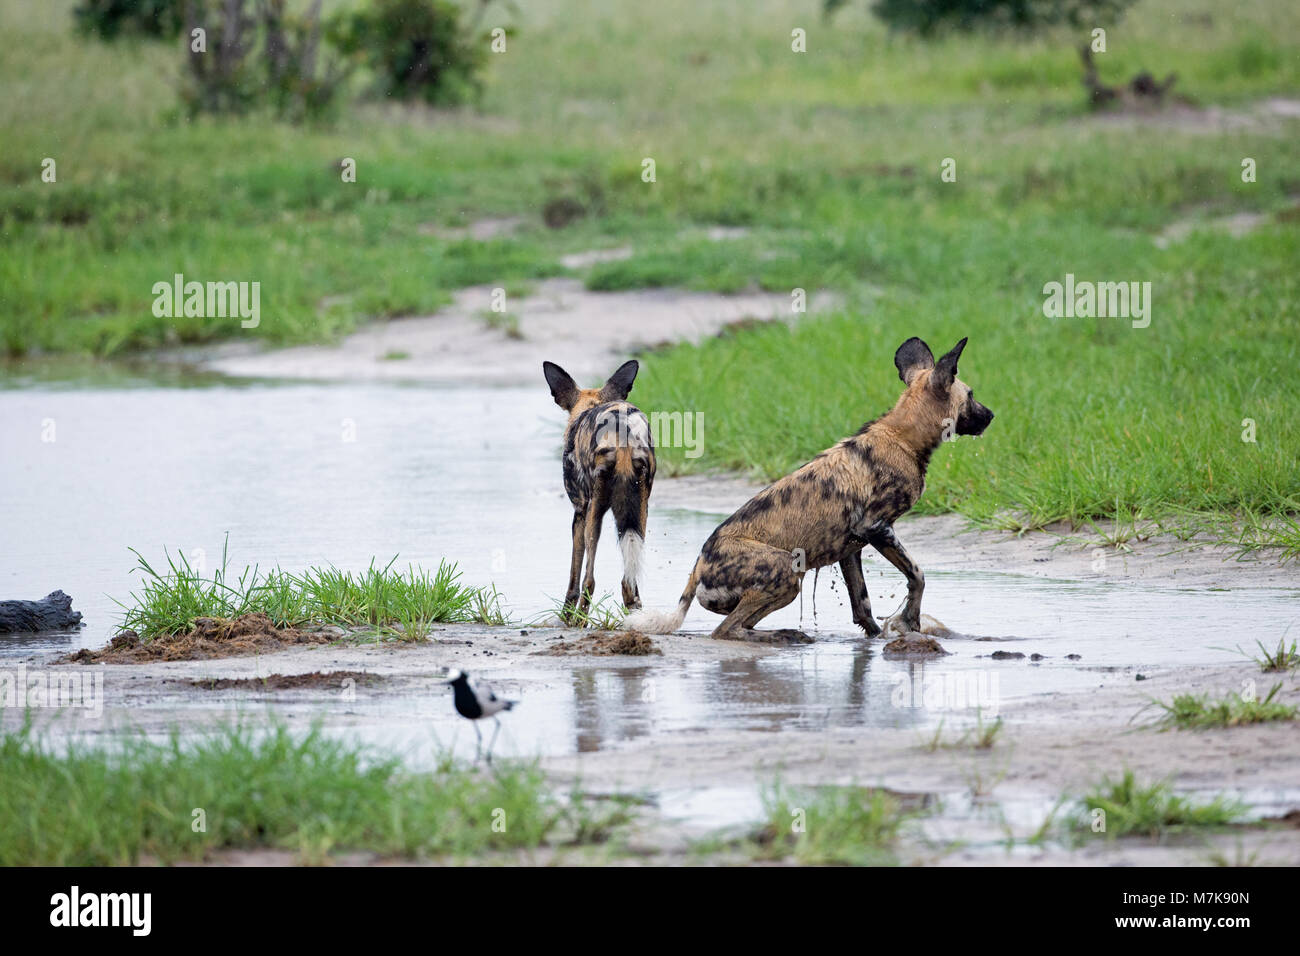 Afrikanische Jagd Hund, Afrikanischer Wildhund, oder gemalten Hund oder Wolf, lackiert (Lycaon pictus). Zwei aus einem pack Baden in einen flachen Pool, der von den neuen Dow gebildet Stockfoto